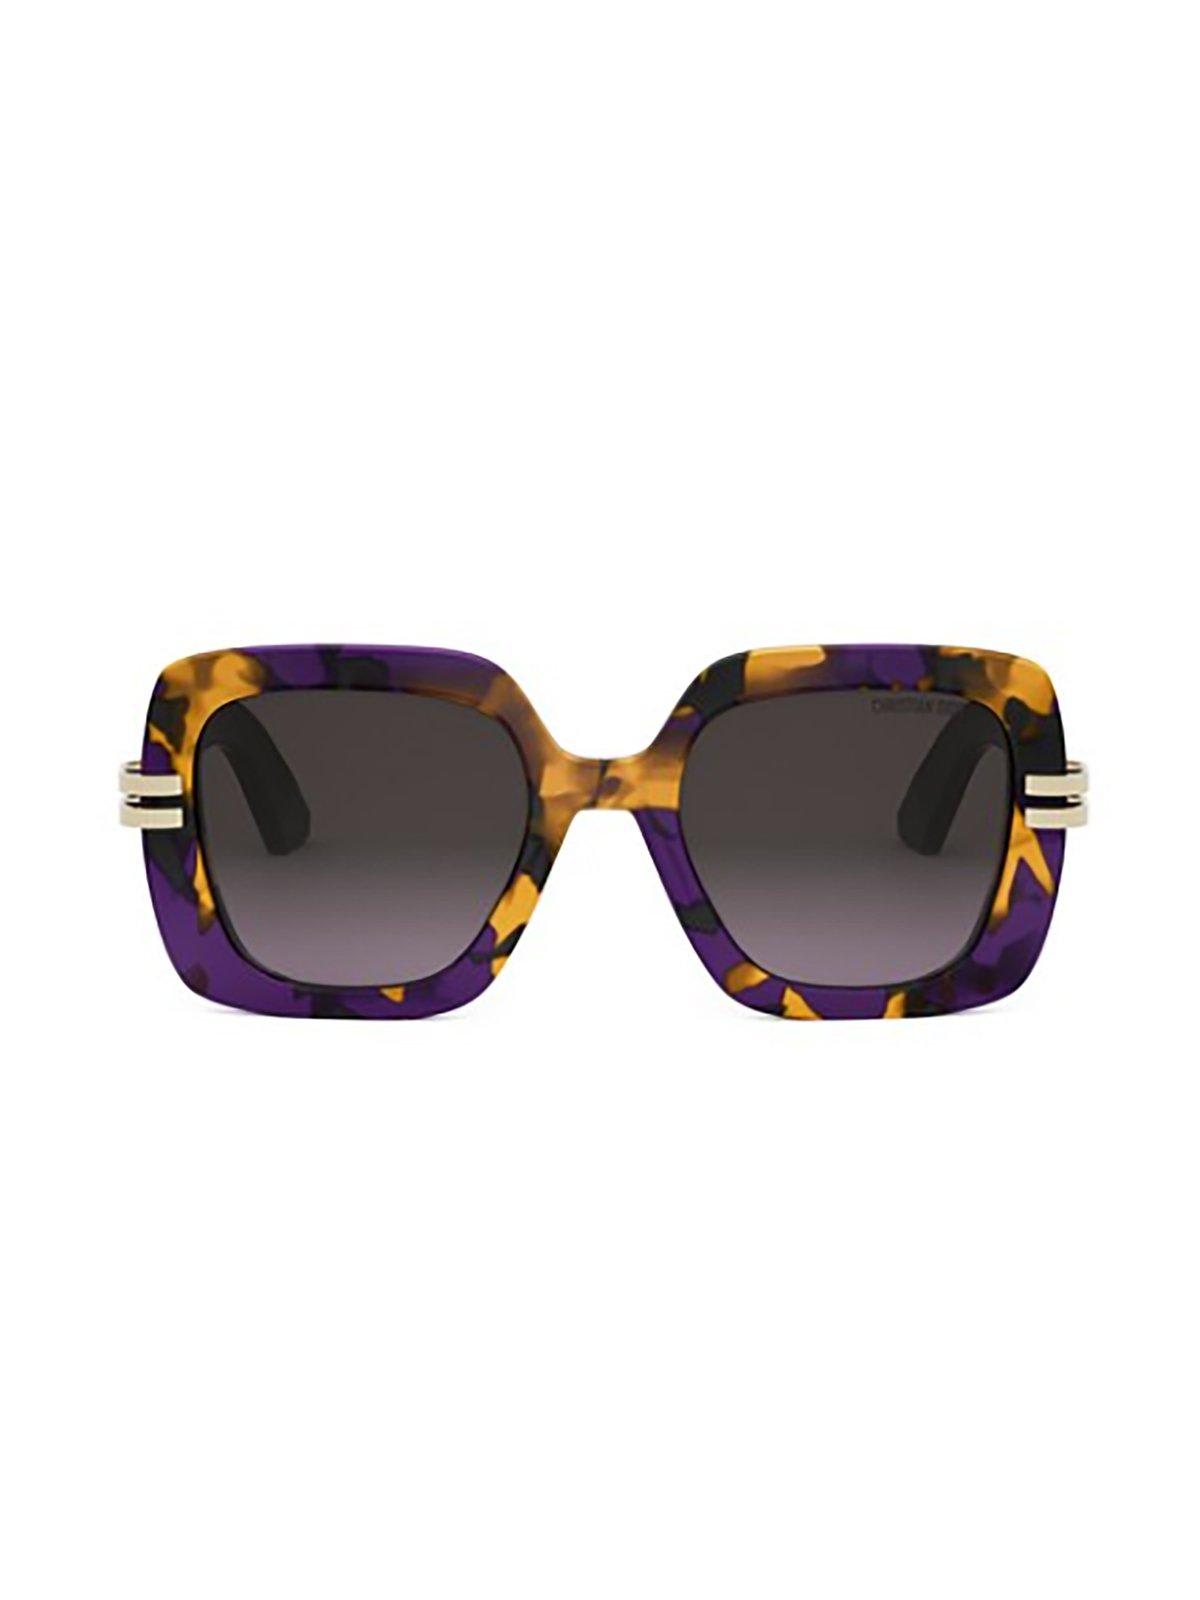 Shop Dior S2i Sunglasses In 24f2